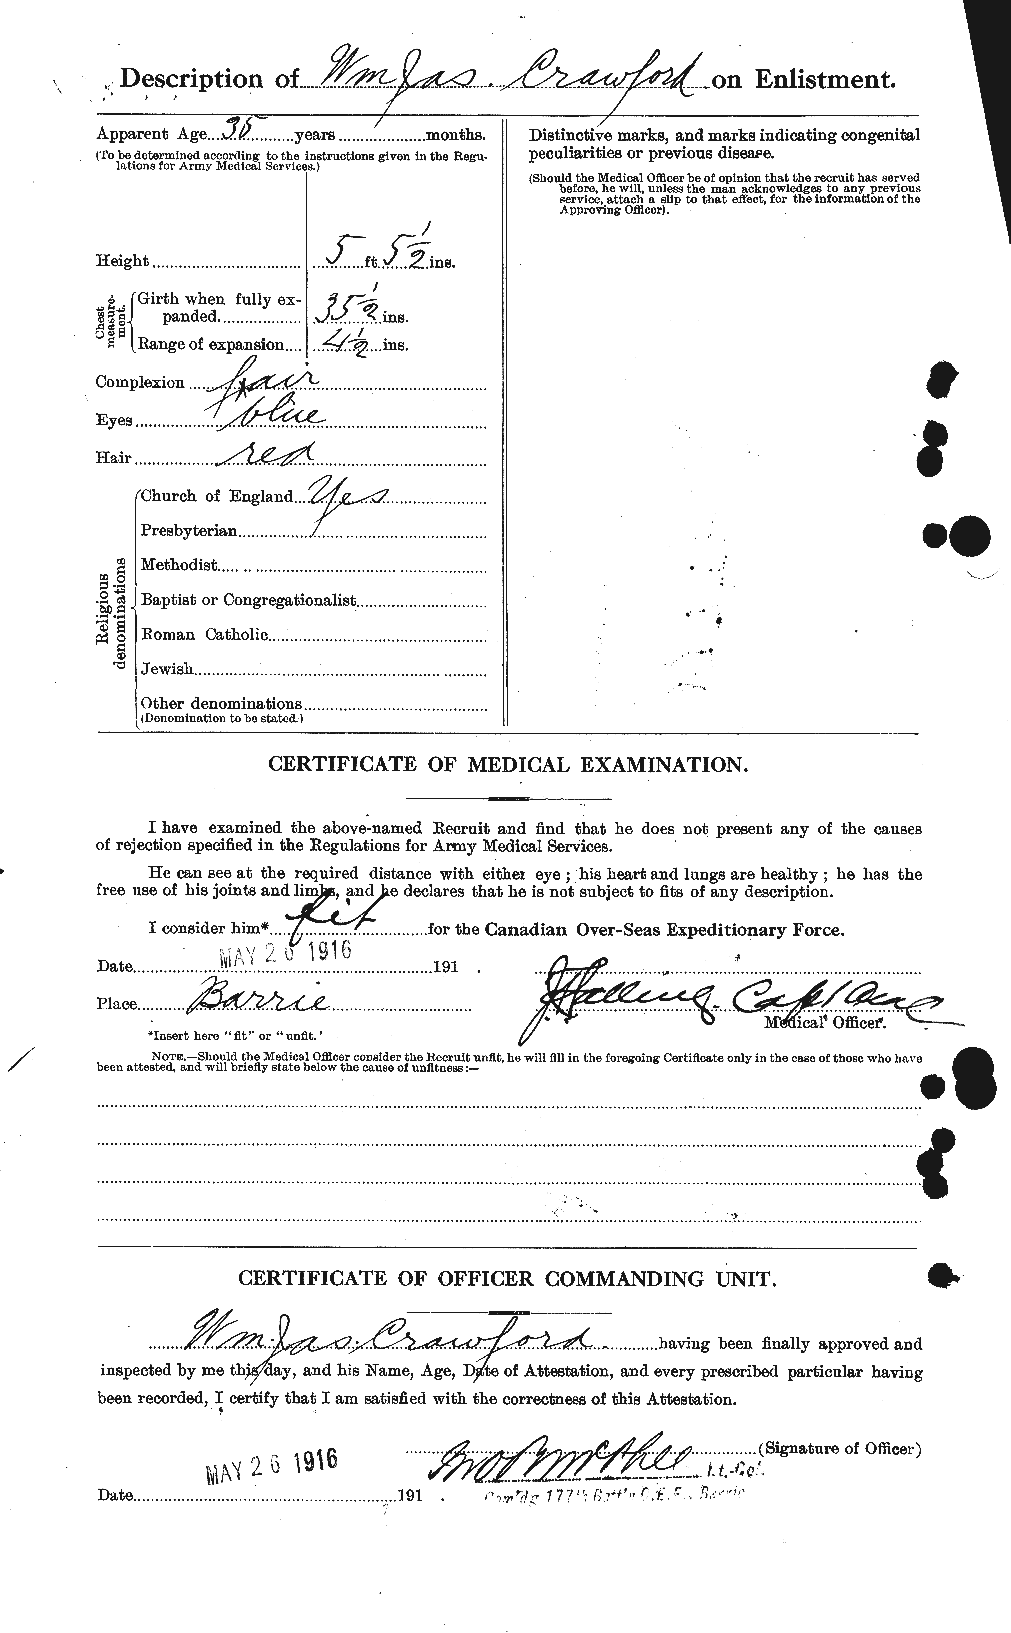 Dossiers du Personnel de la Première Guerre mondiale - CEC 061133b